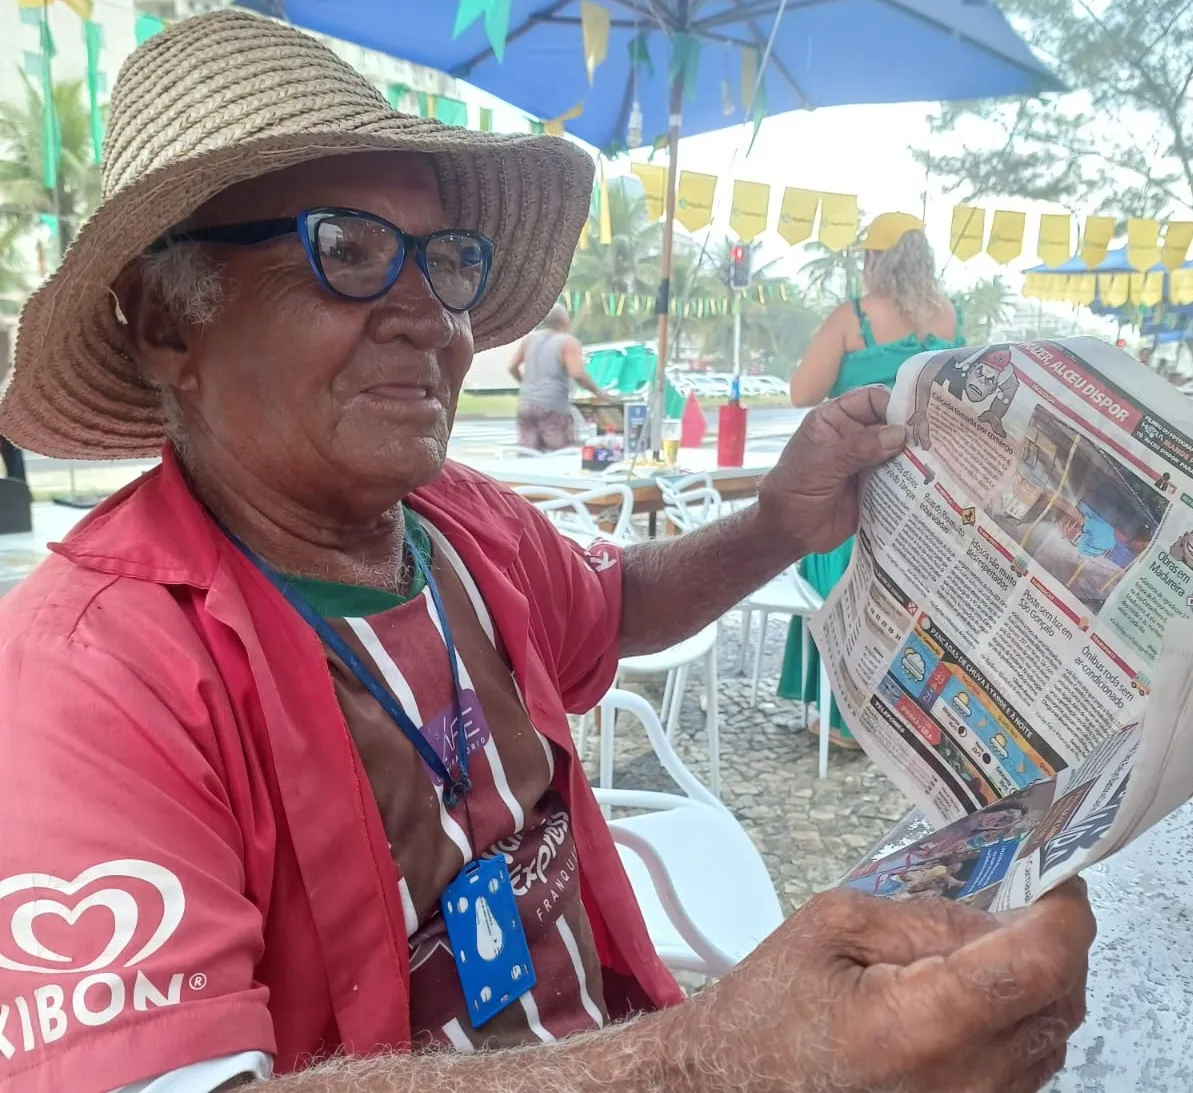 Adilson trabalhava há mais de 50 anos na Praia da Barra e faria aniversário em agosto